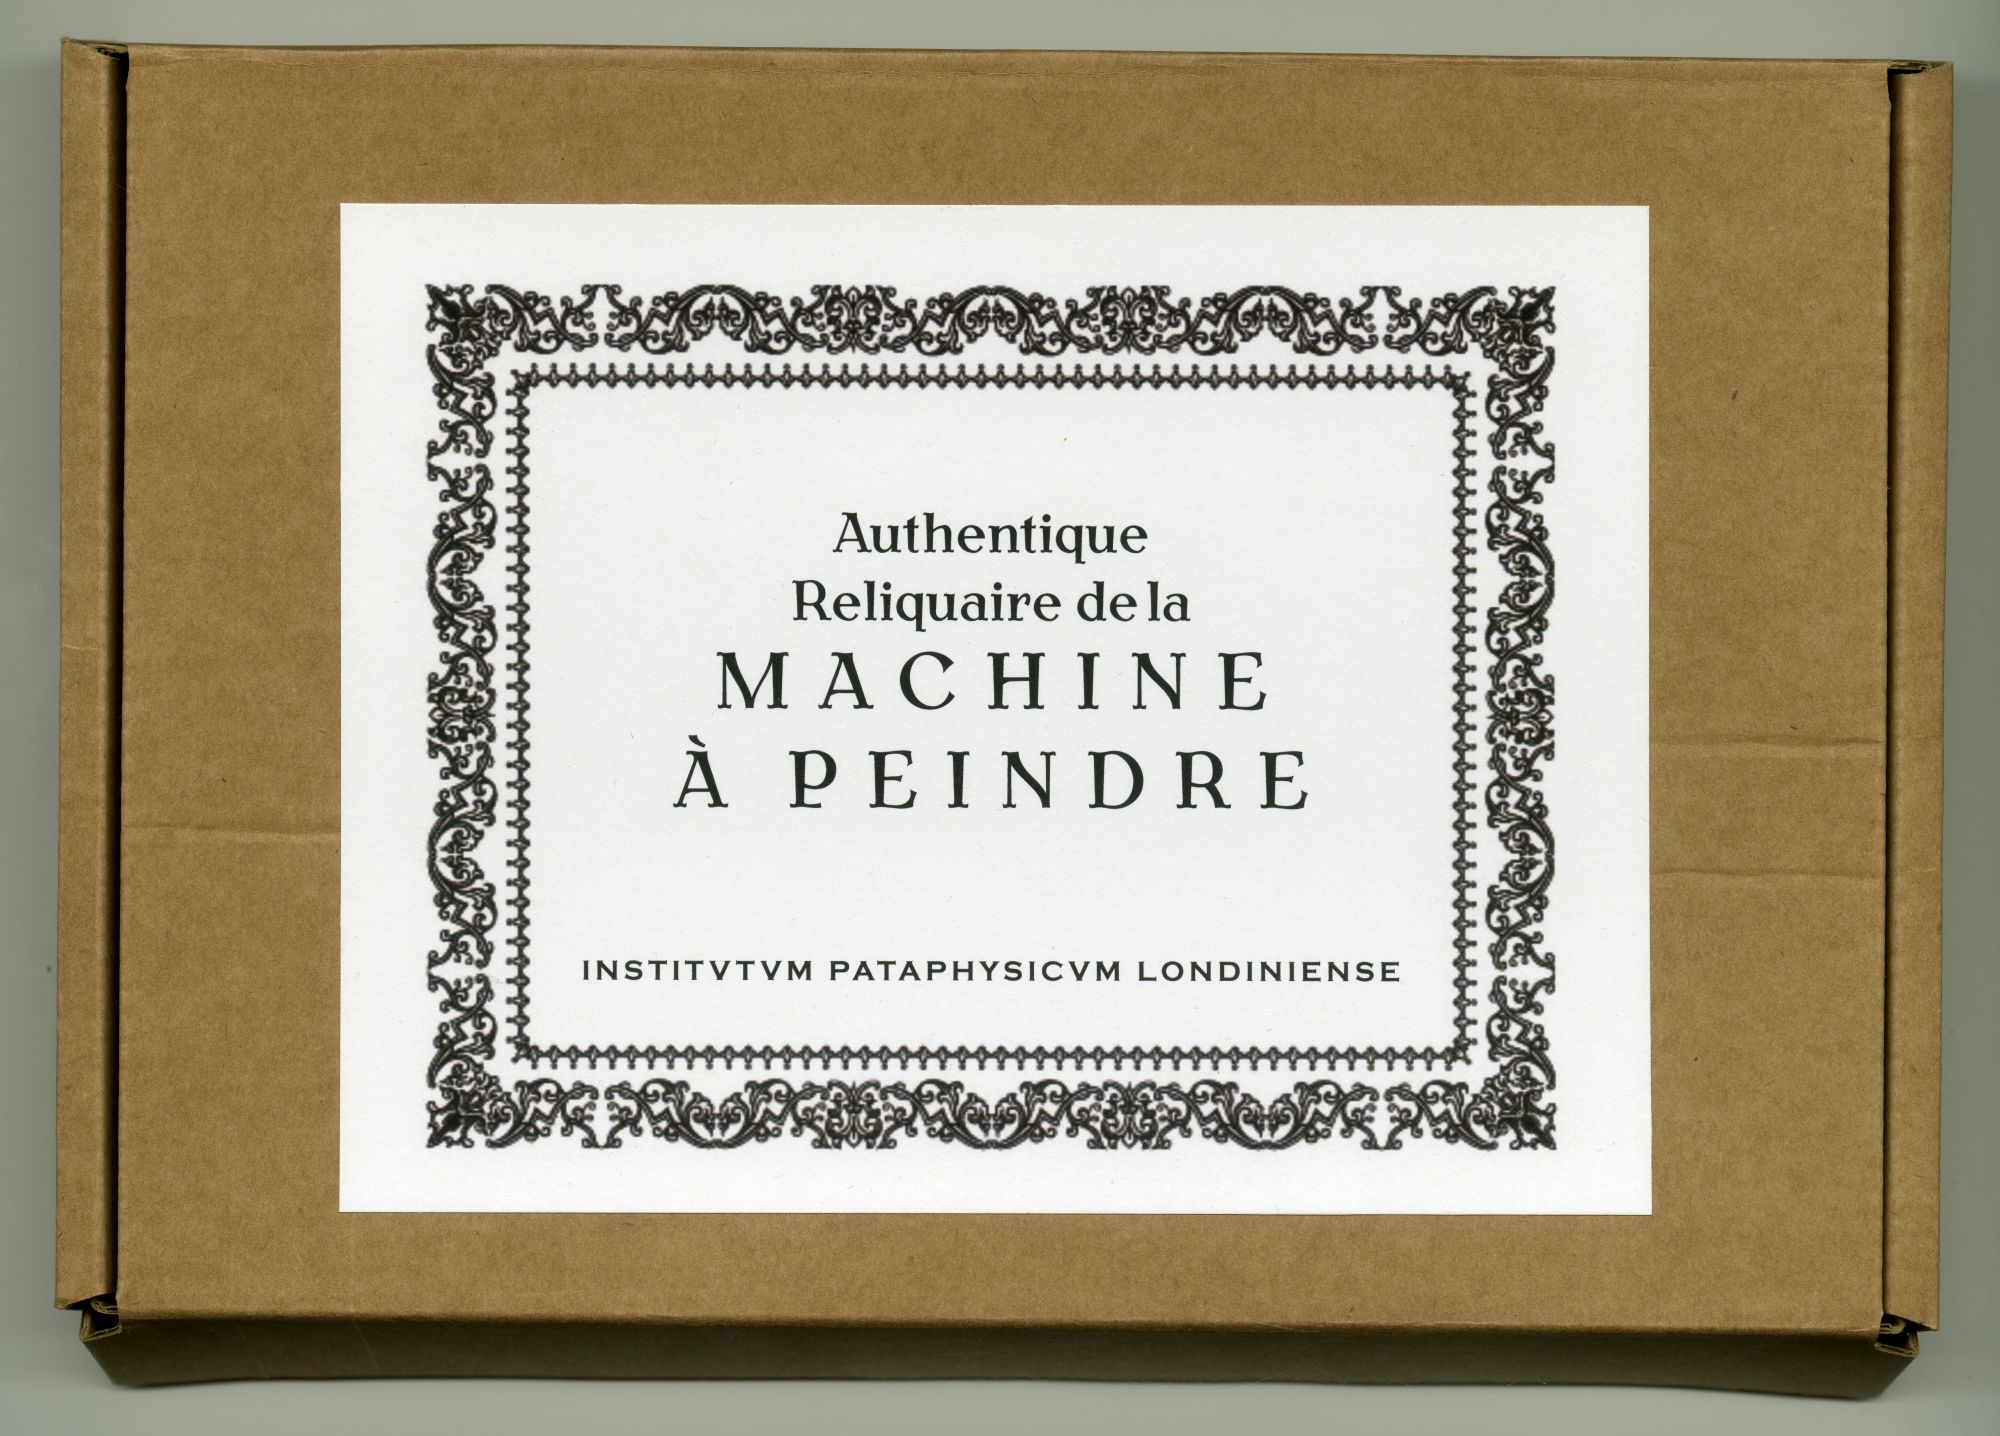 『Authentique Reliquaire de la MACHINE À PEINDRE』01